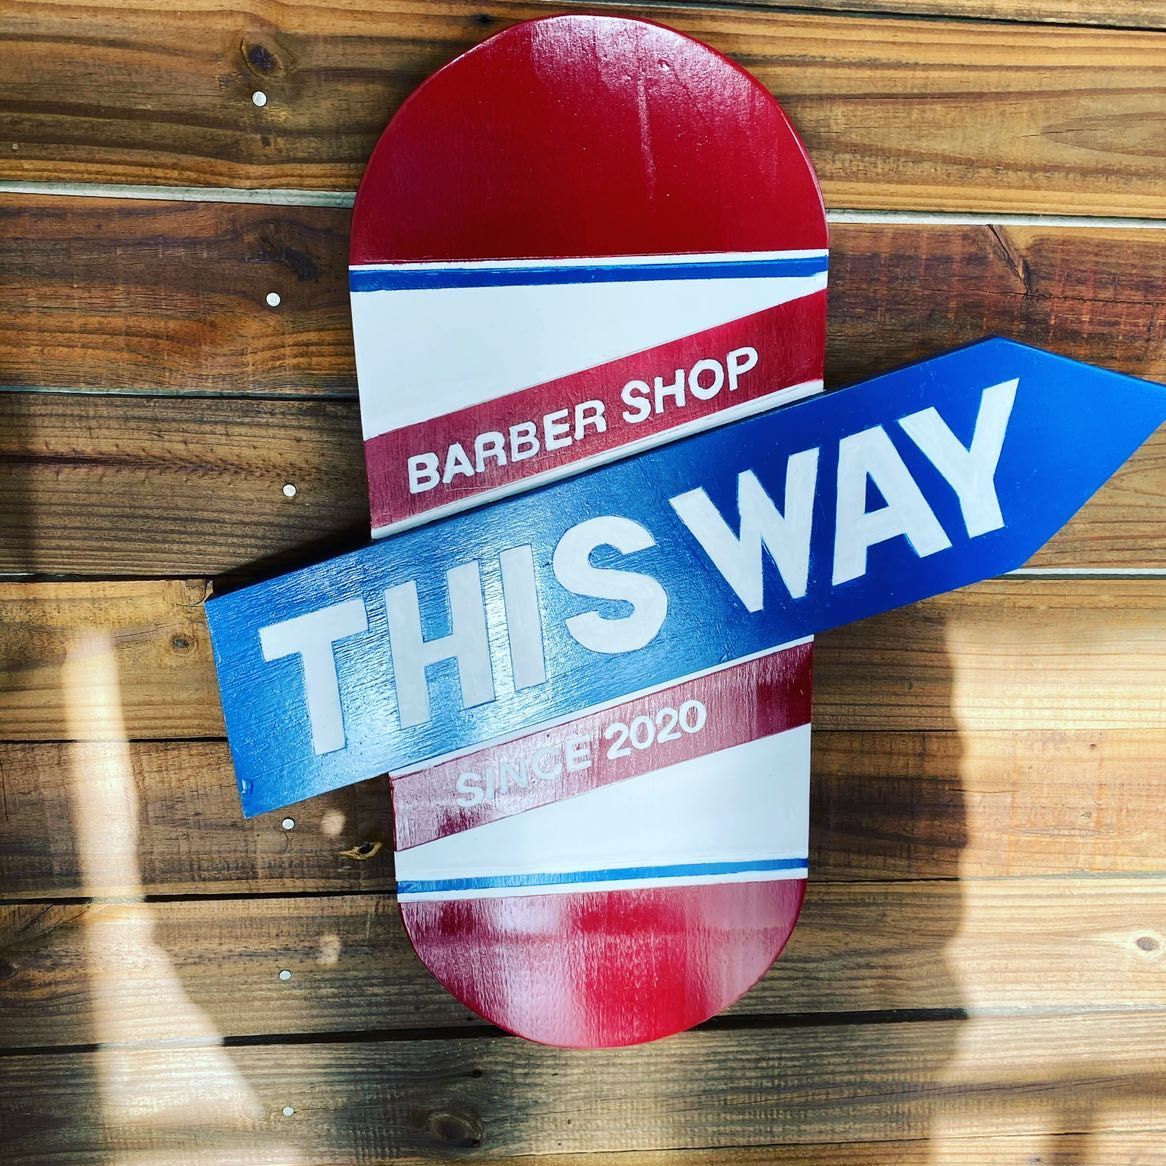 This way barbershop, 3031 US Highway 27 N, Sebring, 33870